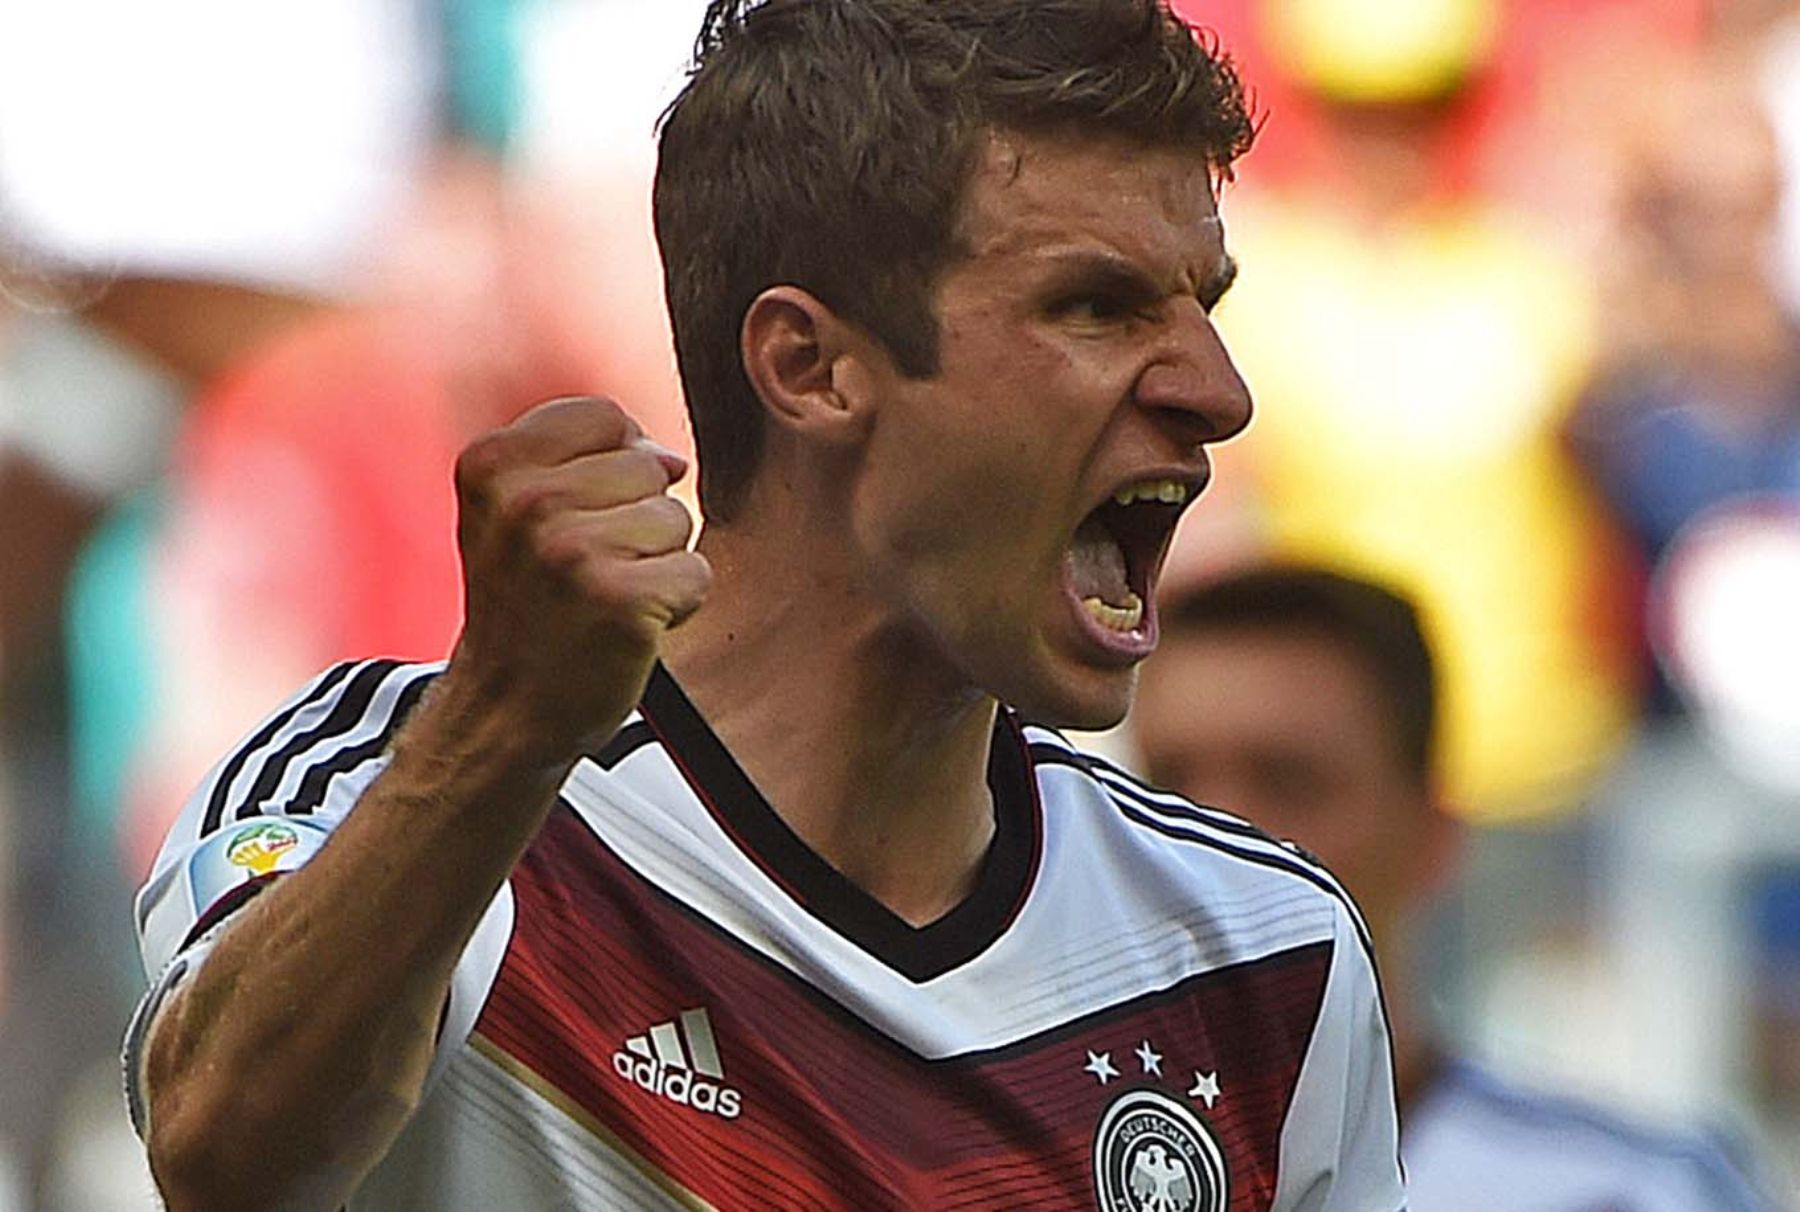 ¿Cuántos goles hizo Müller en el Mundial 2014